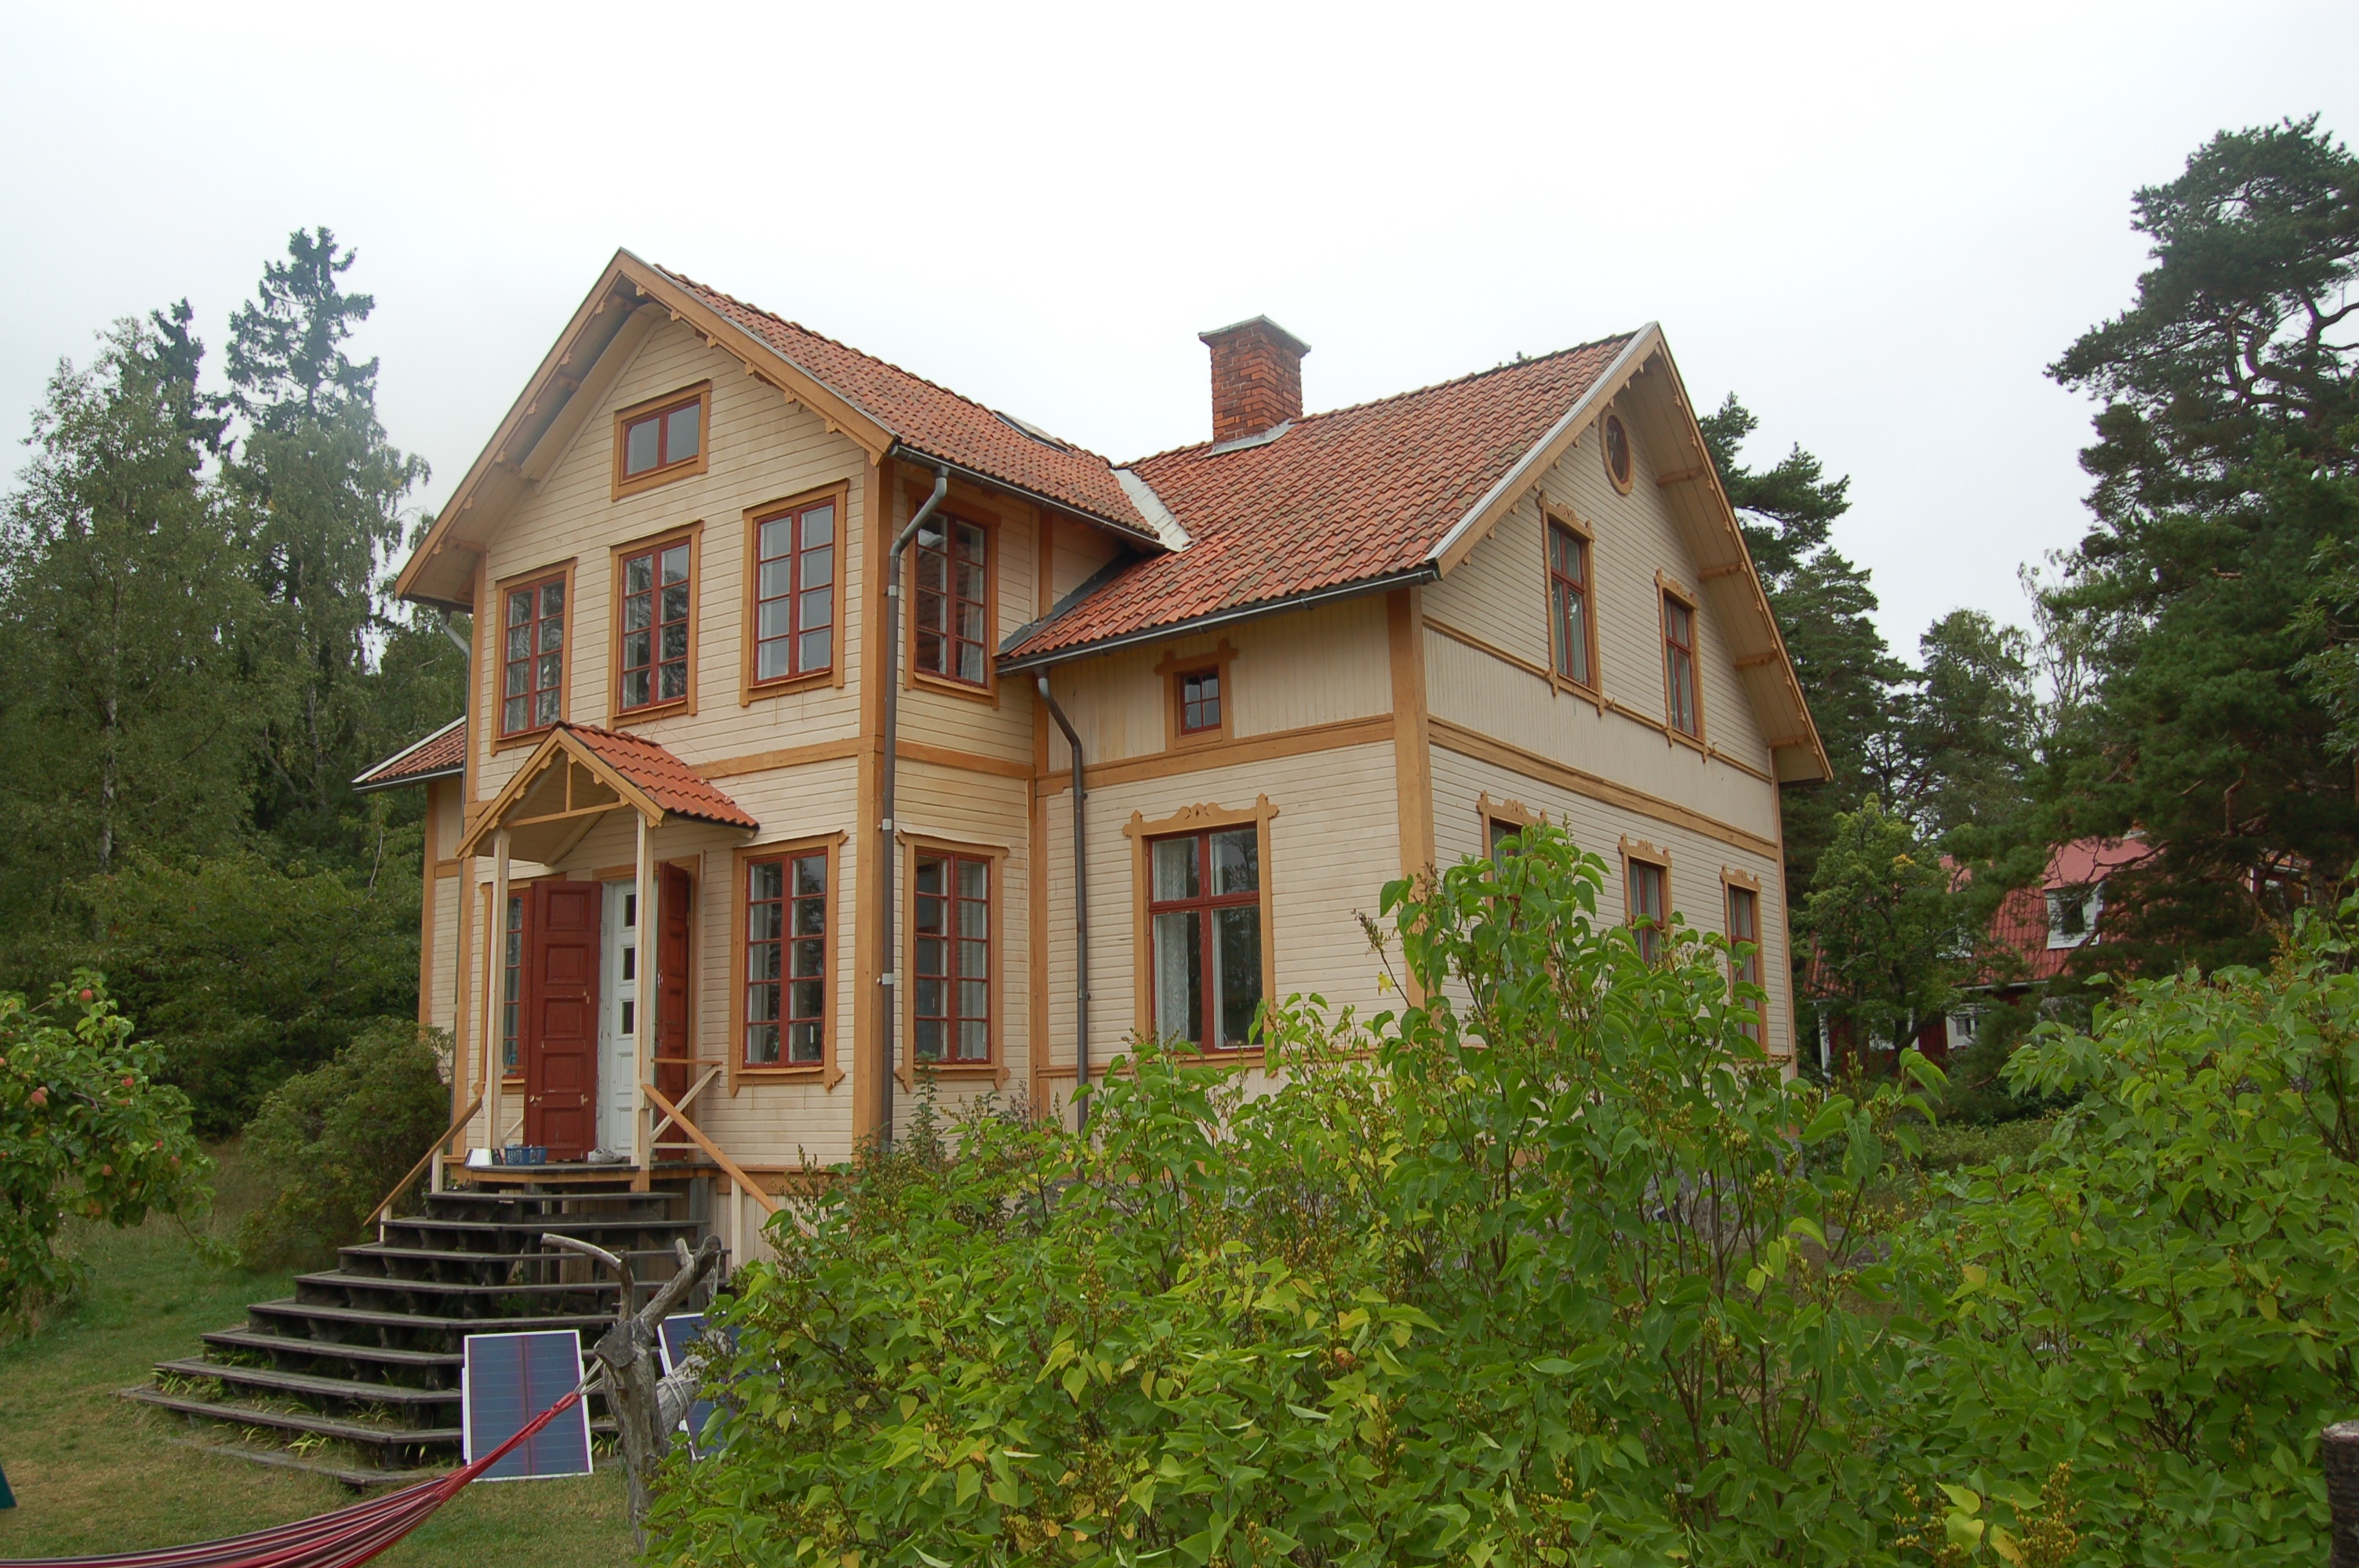 Sommarvillan vid Själviks brygga enligt uppgift uppförts
under Stockholmsutställningen 1897 som ett
exempel på ”sommarboende i skärgården”.